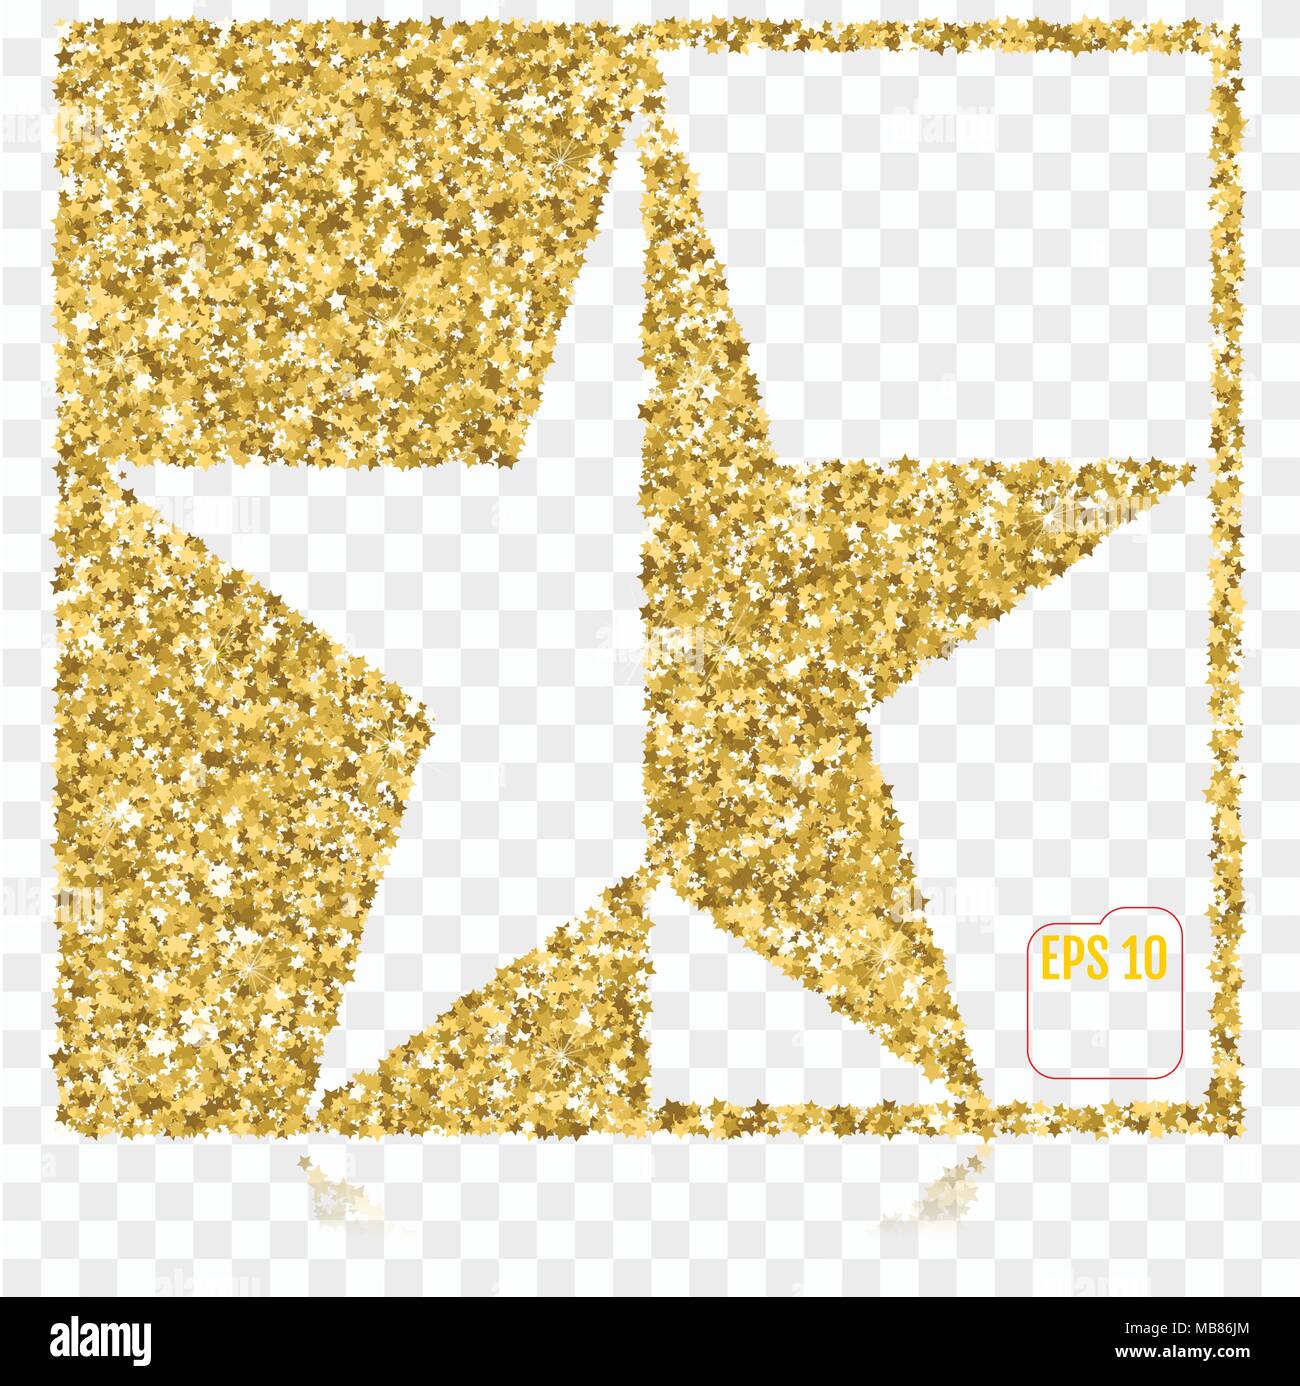 Confeti de Papel a Granel en Oro (10 ud)